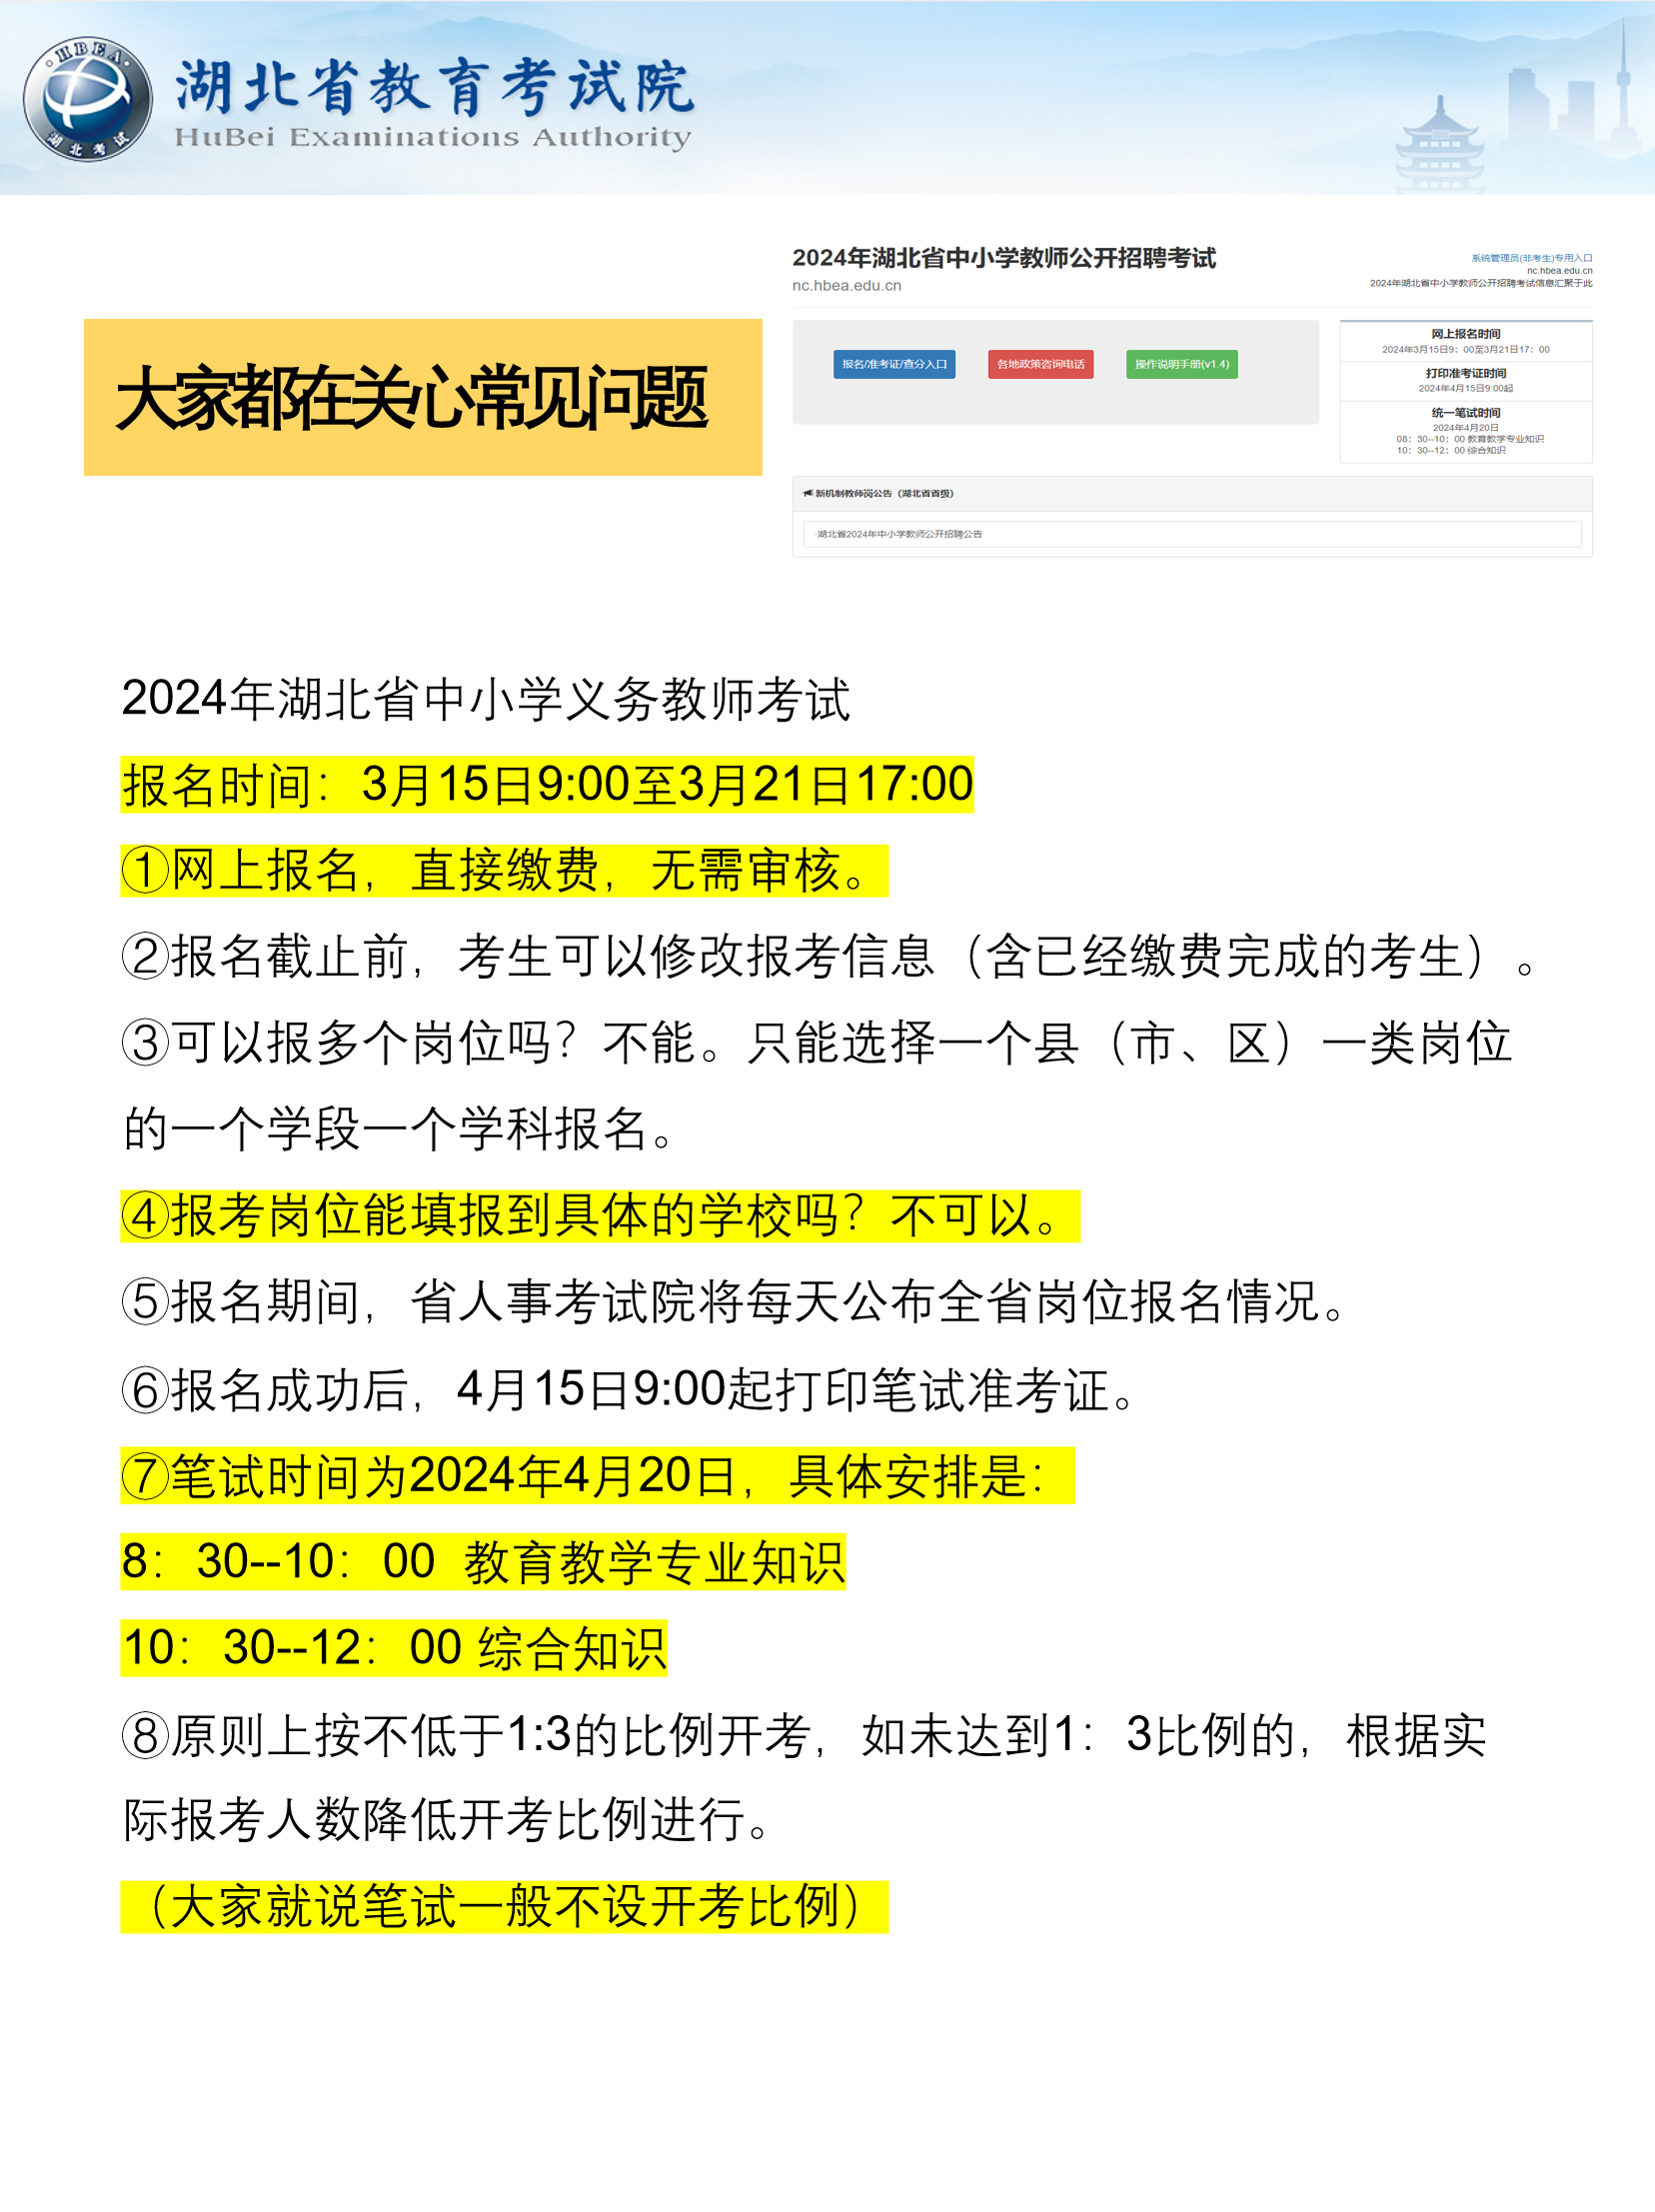 2024年湖北省中小学义务教师报考答疑